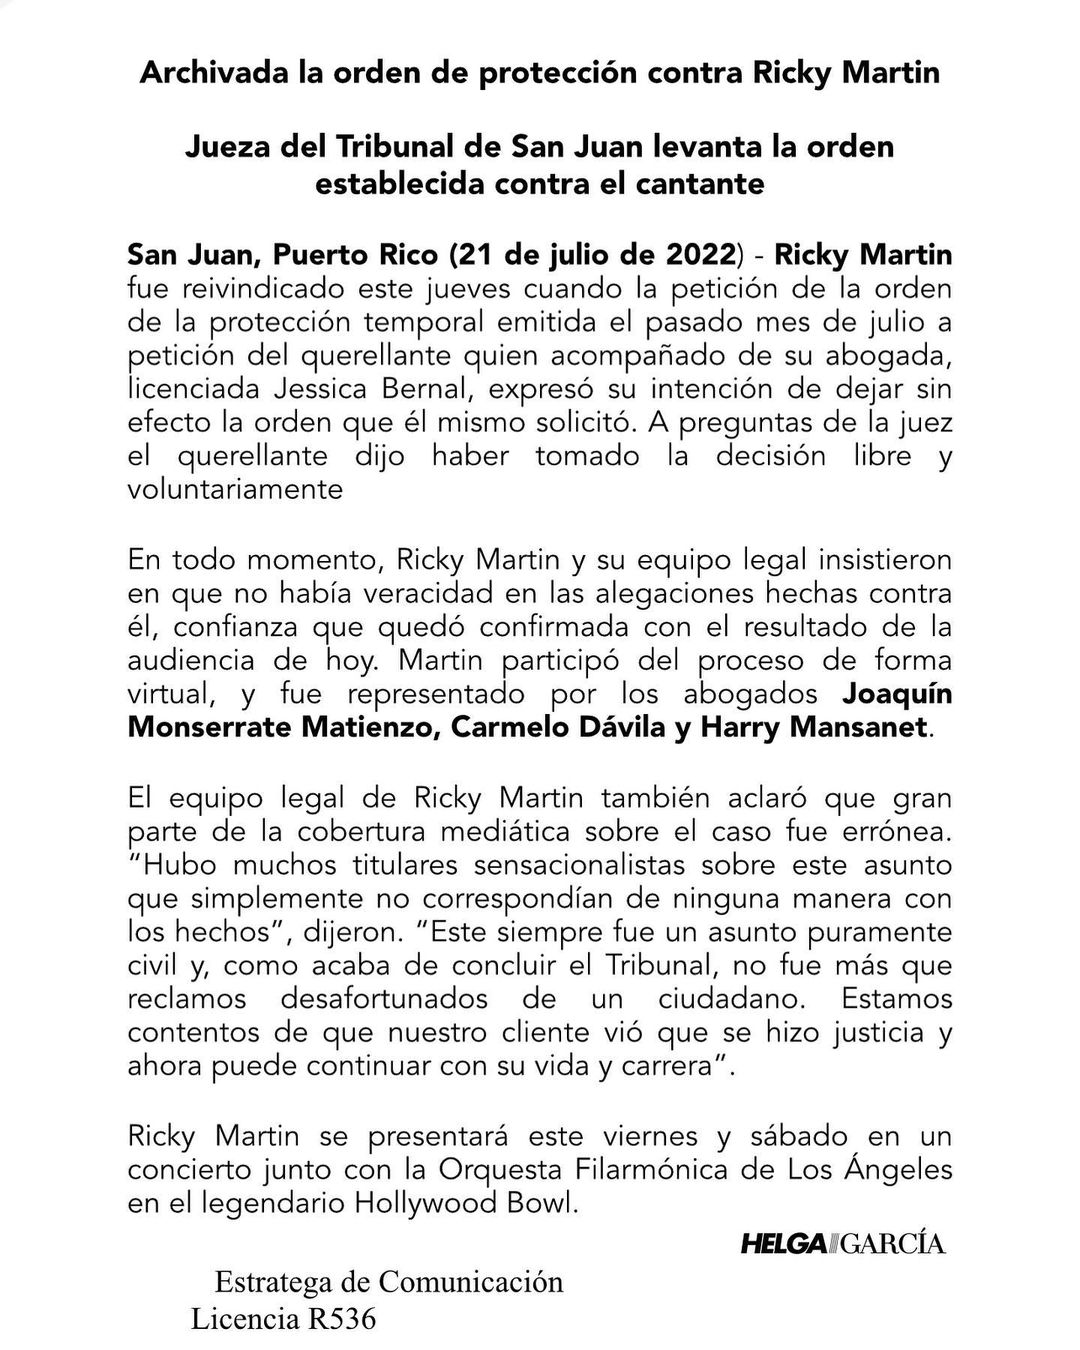 Archivan caso contra Ricky Martin